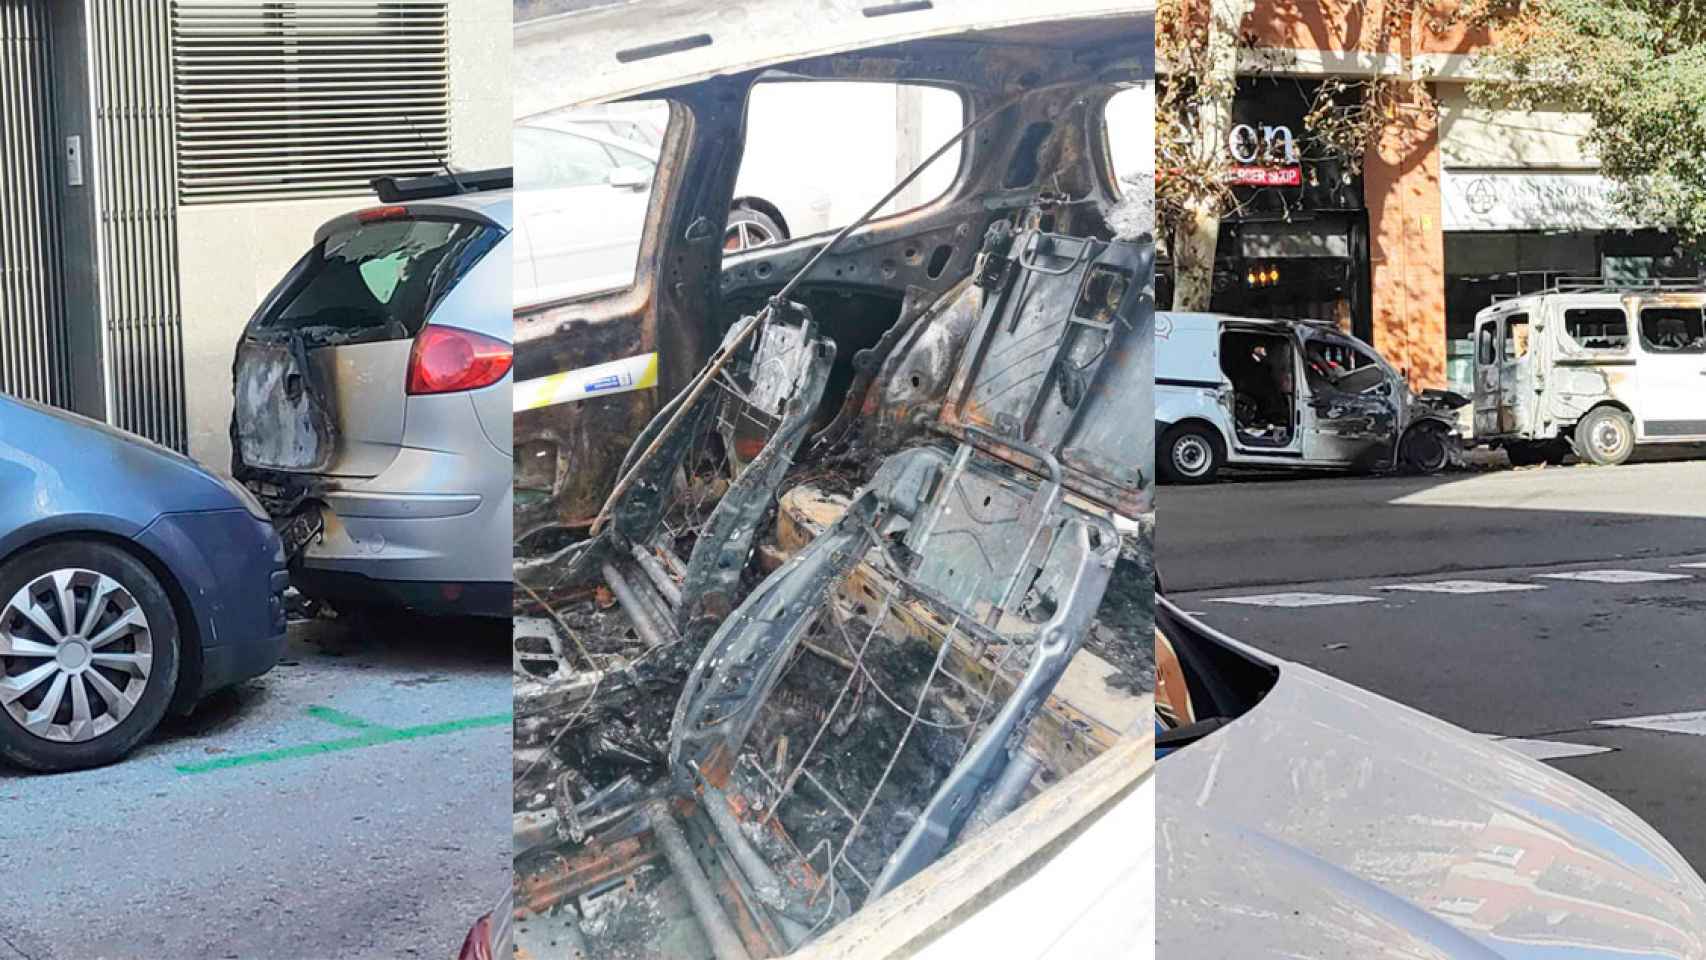 Tres imágenes de coches quemados en Barcelona